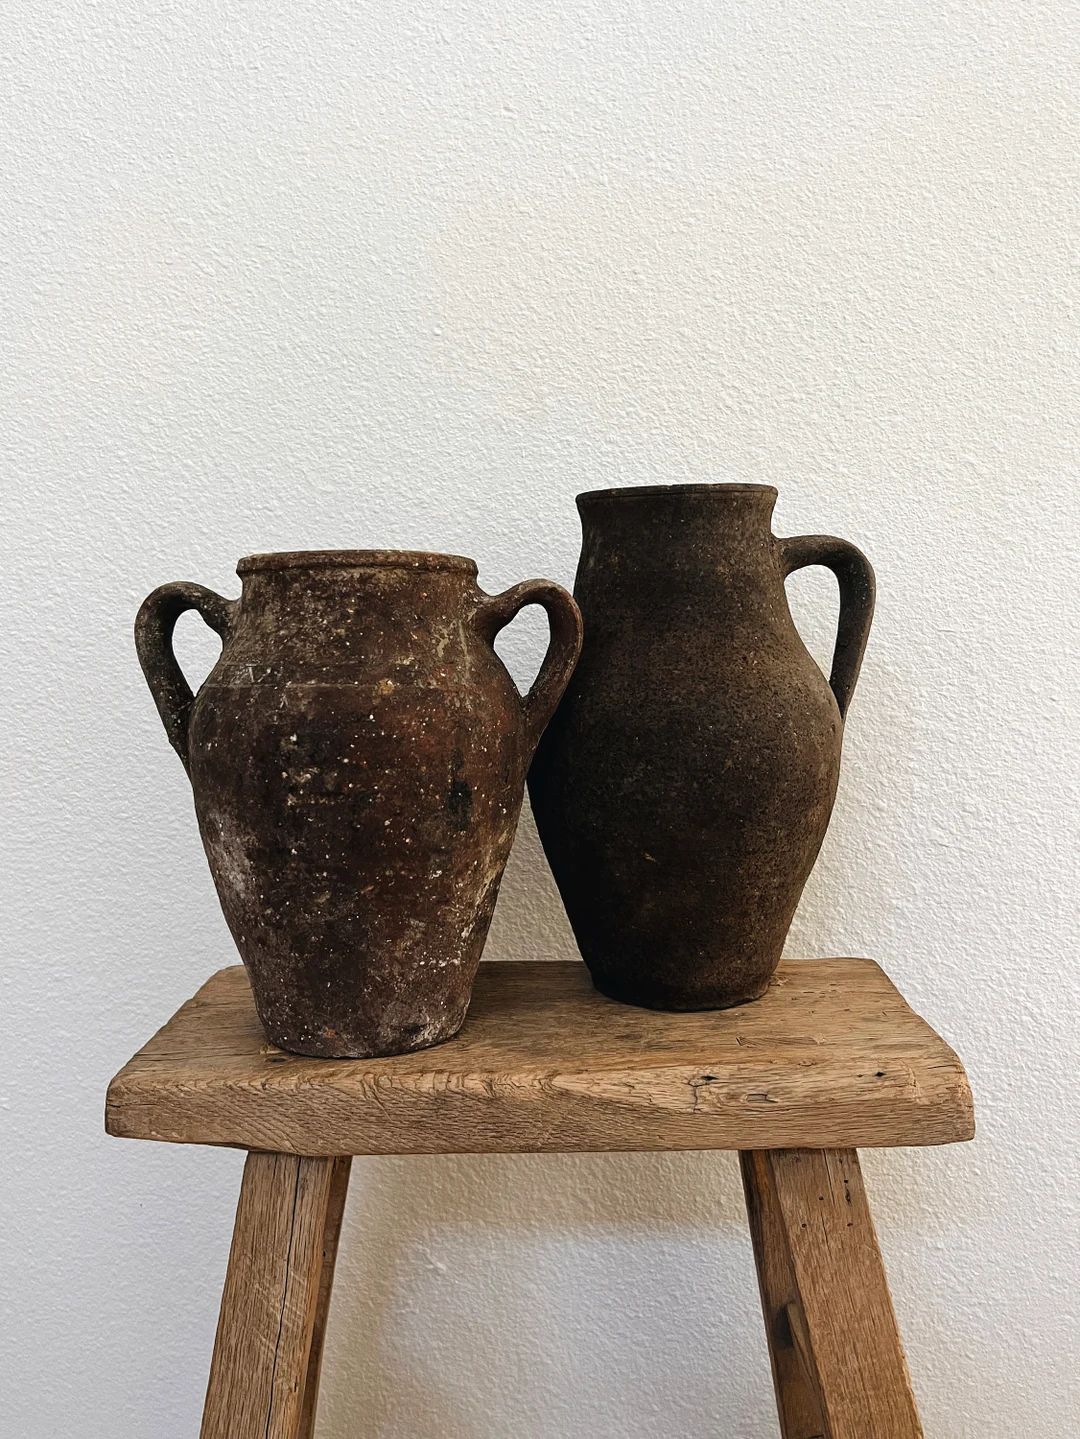 Vintage Rustic Pots, Medium Vase, Clay Vessel | Etsy (US)